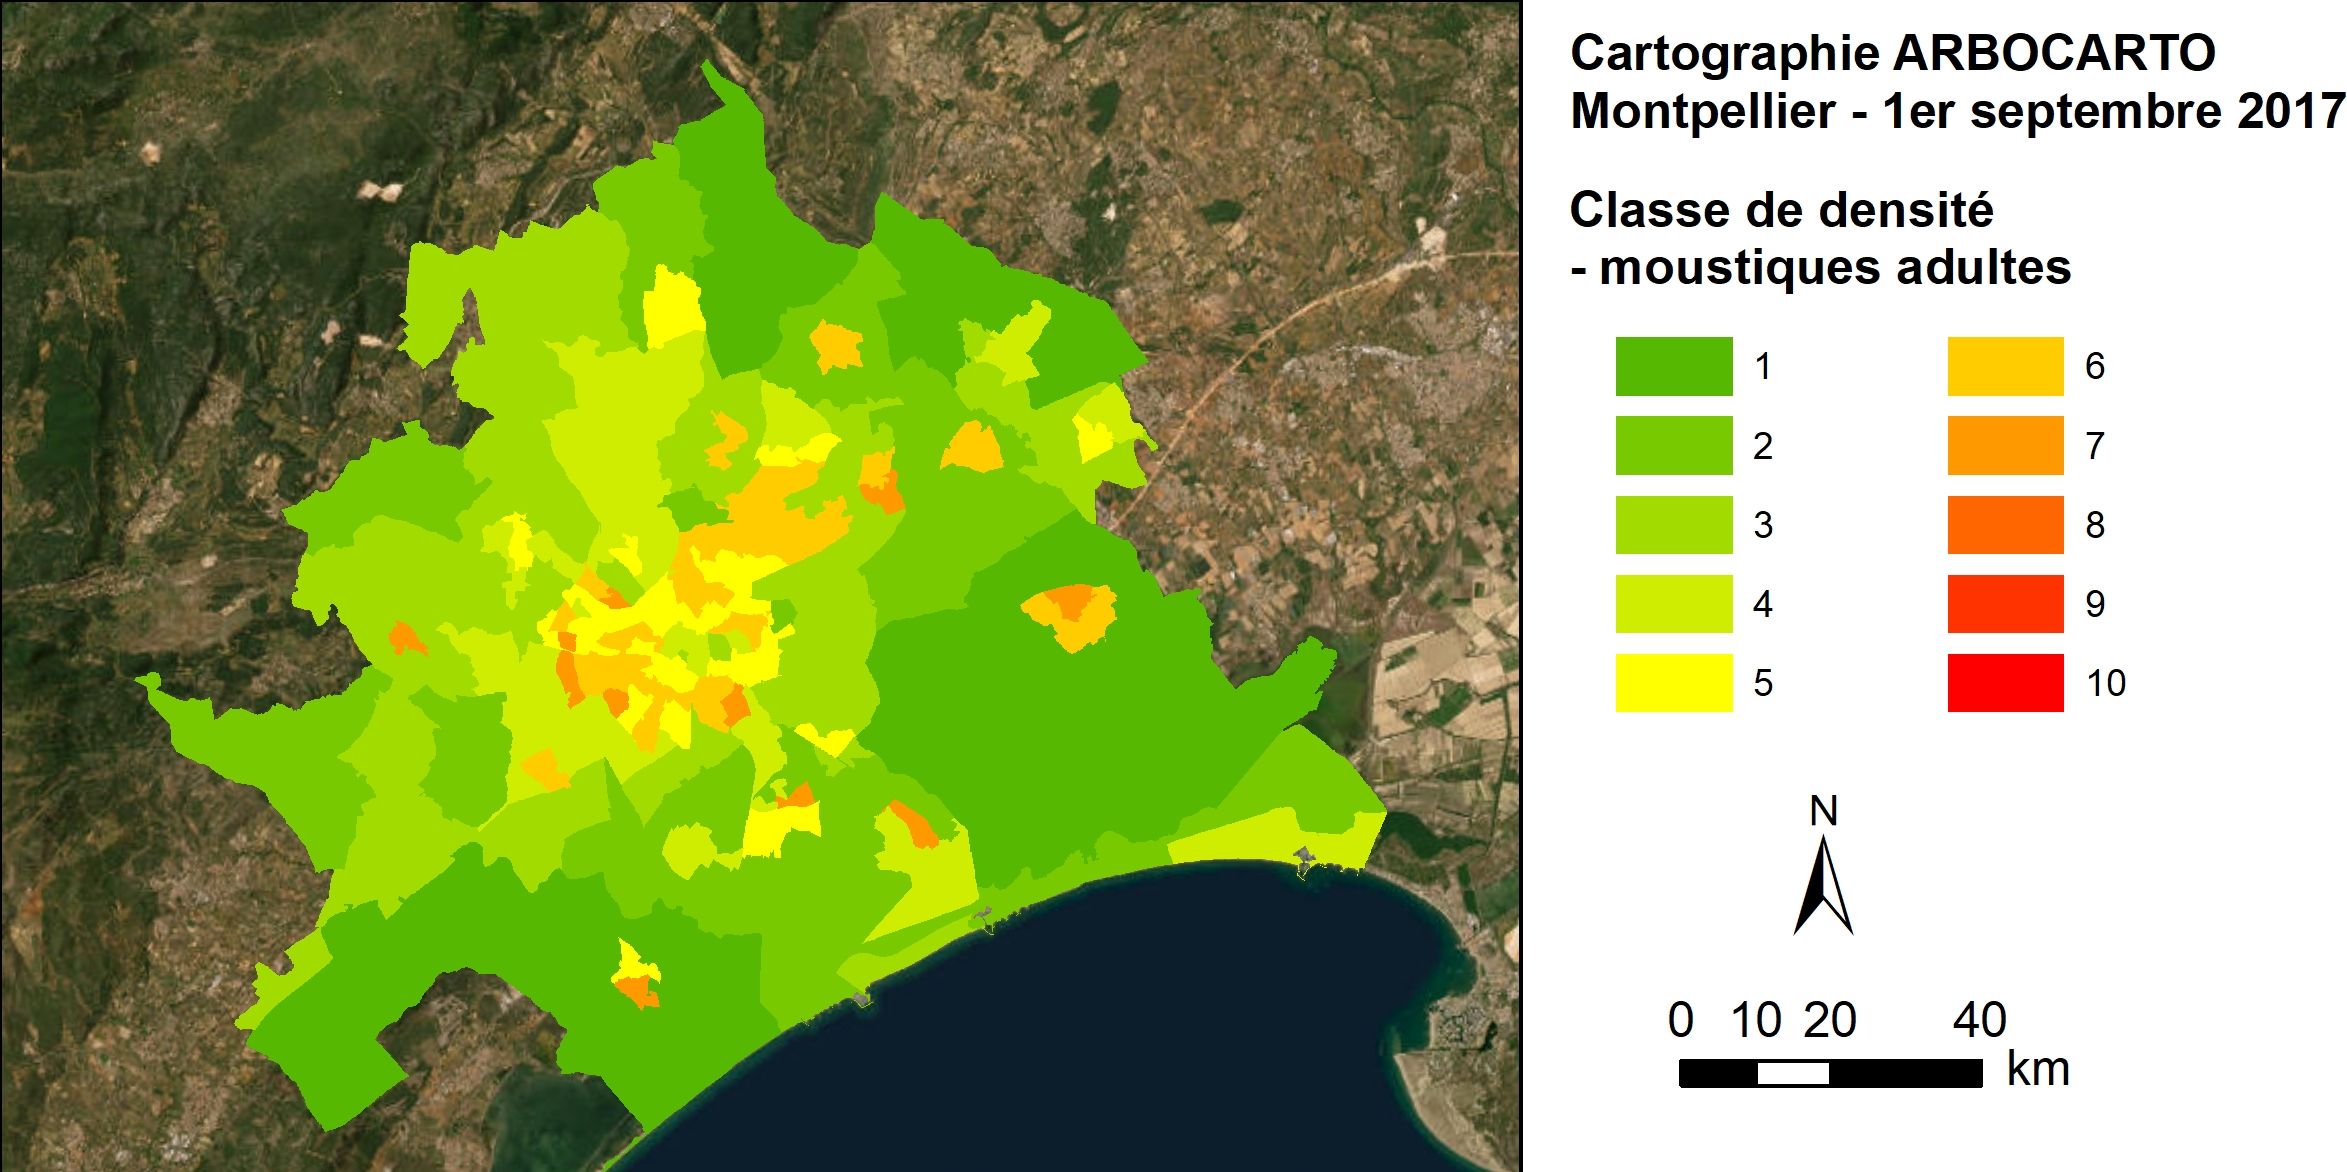 Exemple de sortie de l’outil ARBOCARTO. Simulation des densités de moustiques adultes Aedes albopictus, site de Montpellier, septembre 2017. Du vert, zones à faible densité, au rouge, zones à densité élevée.